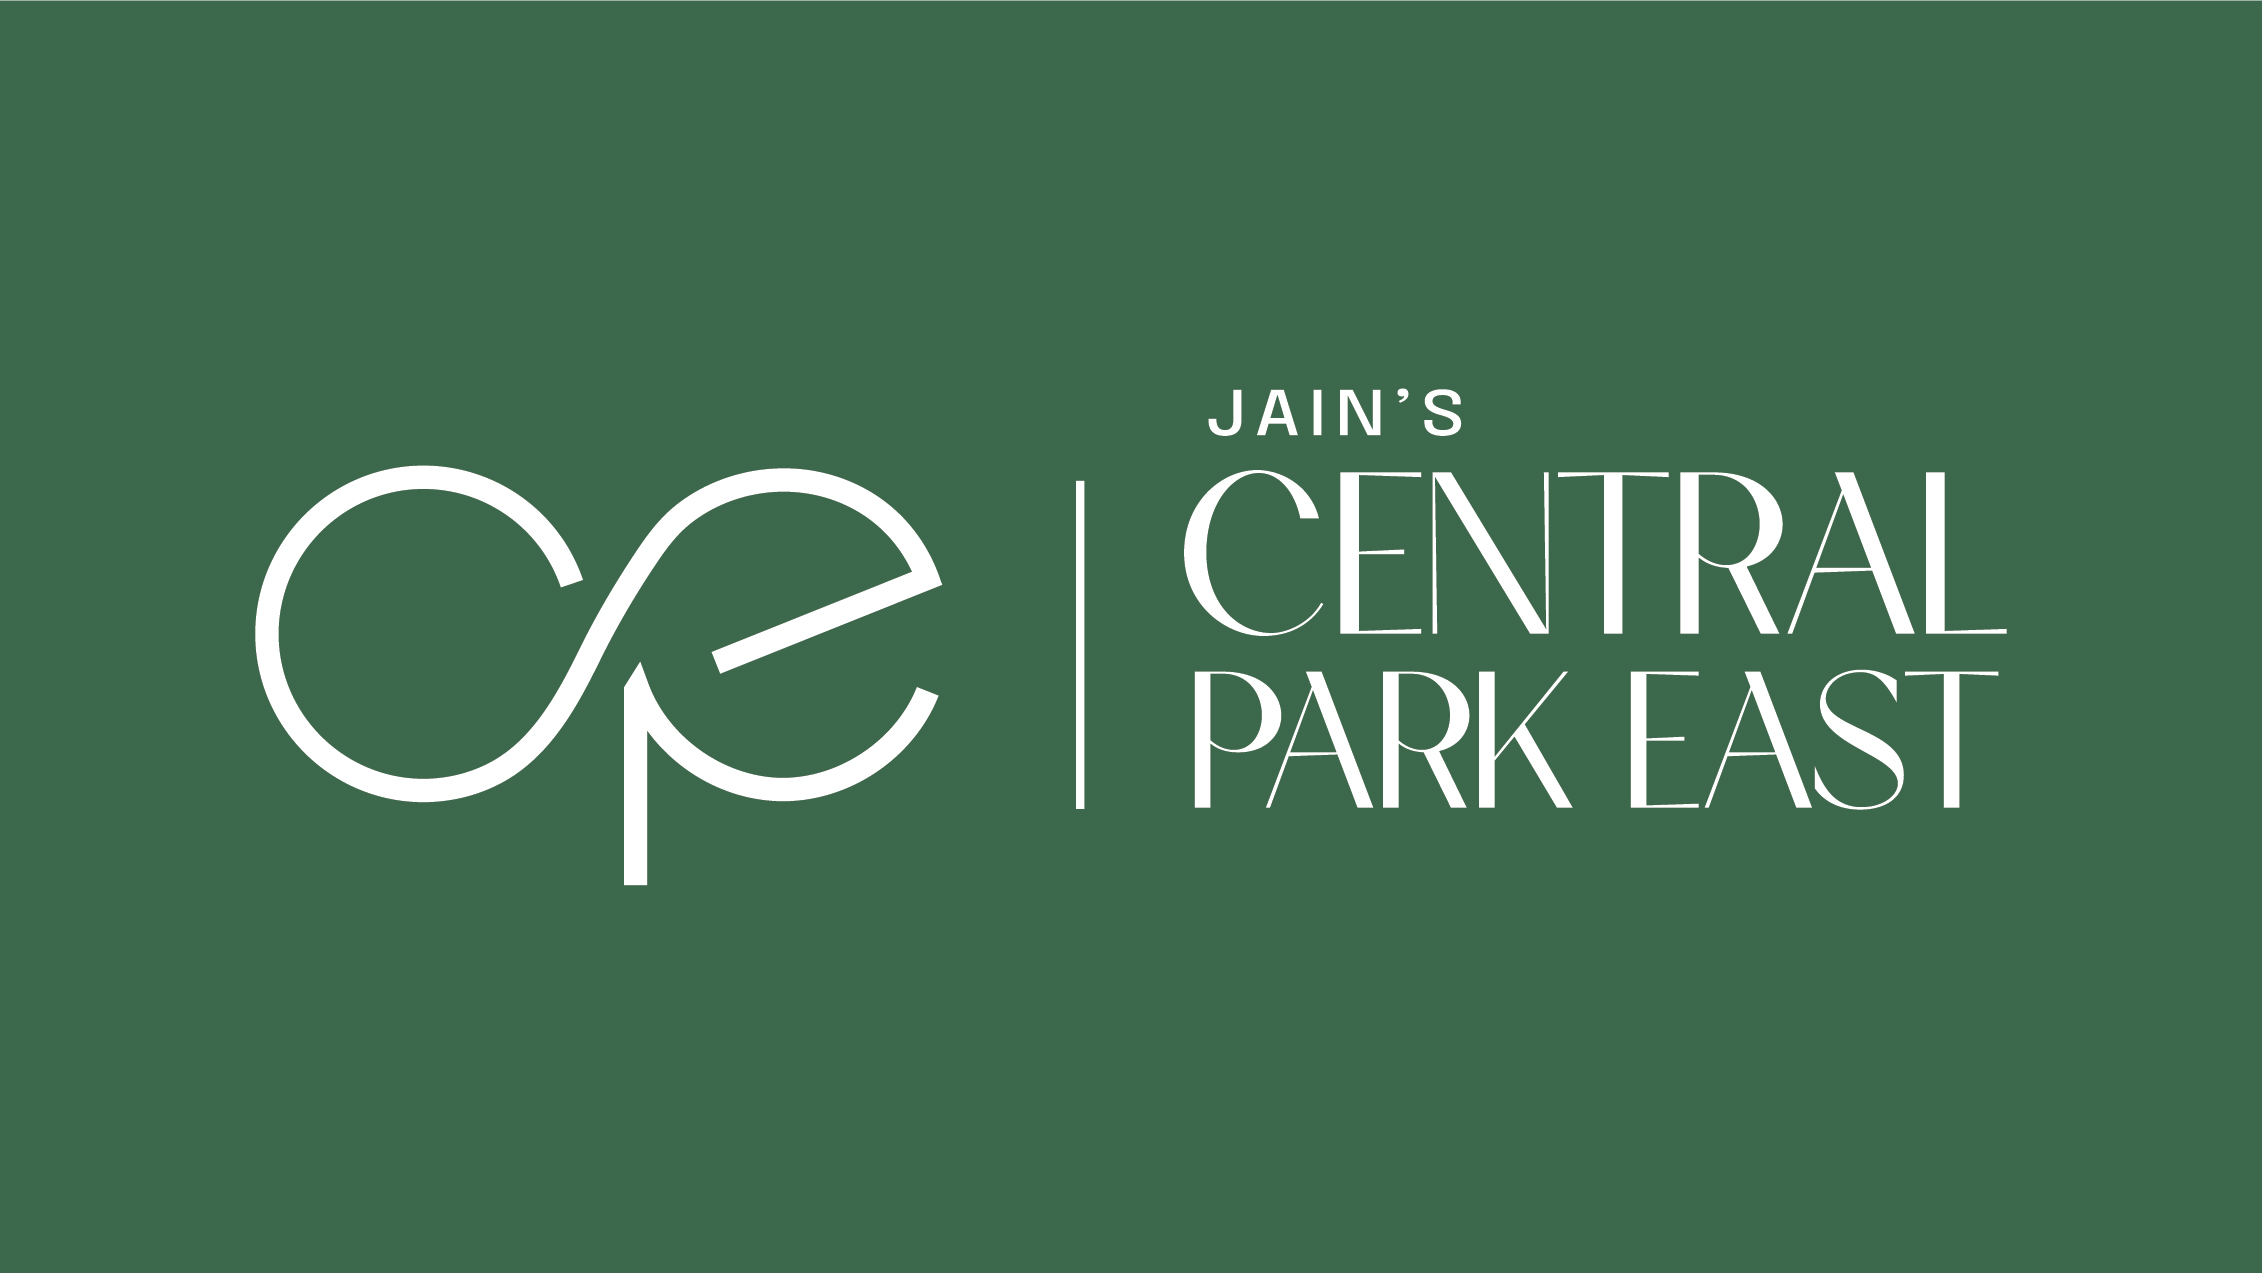 Jain Central Park East - 